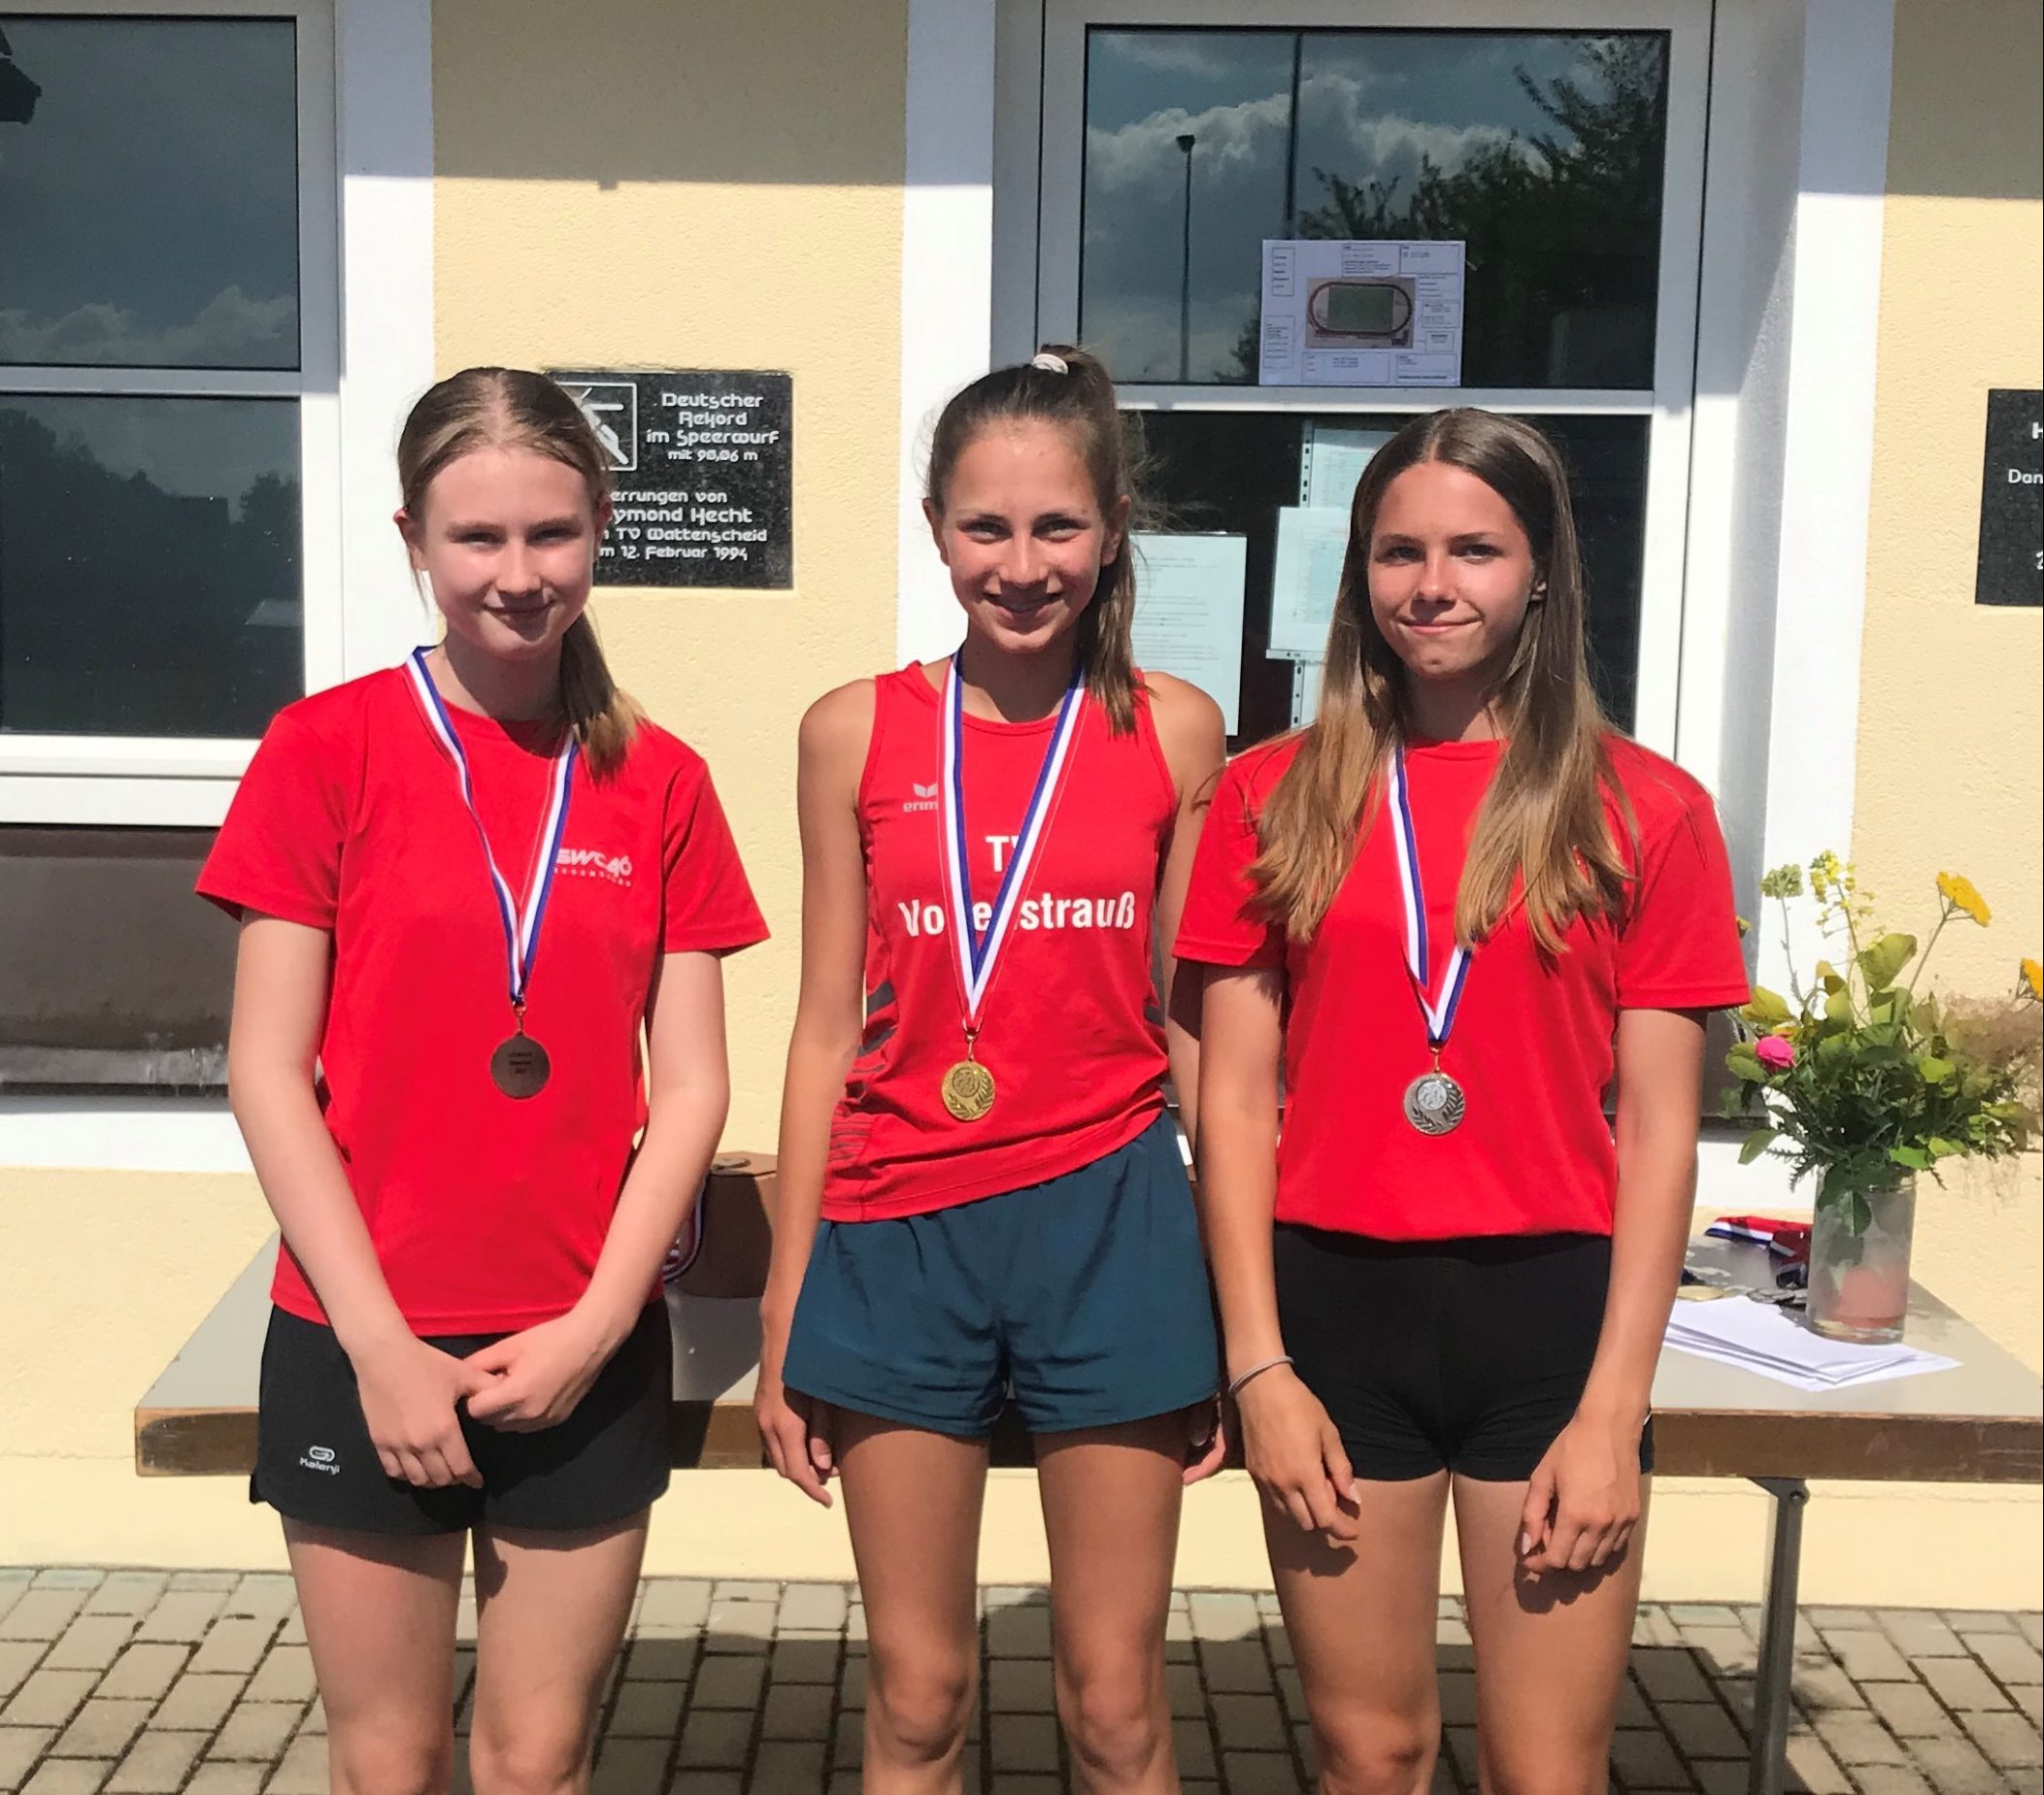 Oberpfalzmeisterschaft der Leichtathleten in den Altersklassen U 16 und U 14